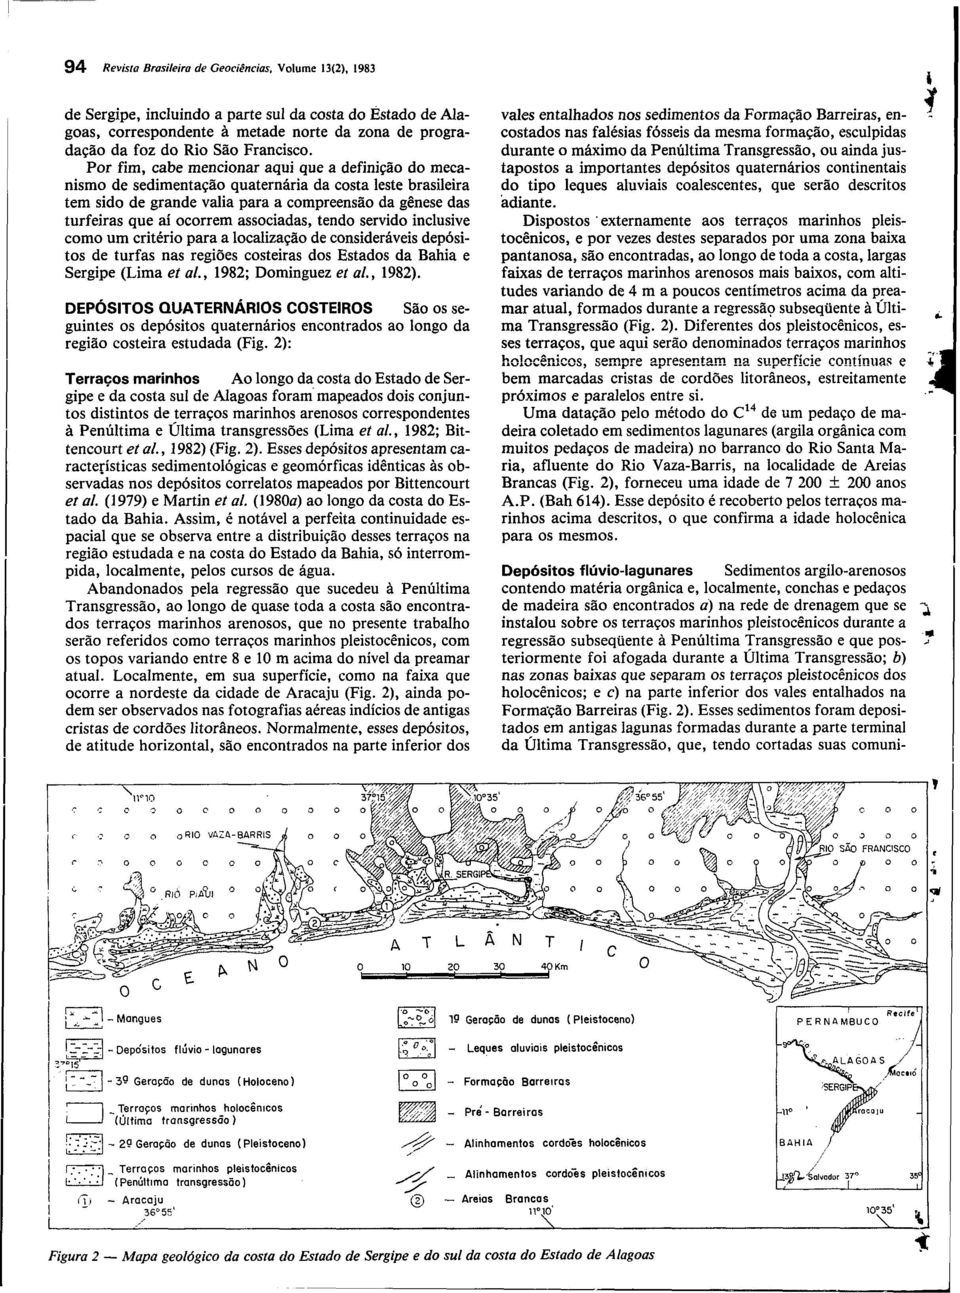 Por fim, cabe mencionar aqui que a definição do mecanismo de sedimentação quaternária da costa leste brasileira tem sido de grande valia para a compreensão da gênese das turfeiras que aí ocorrem